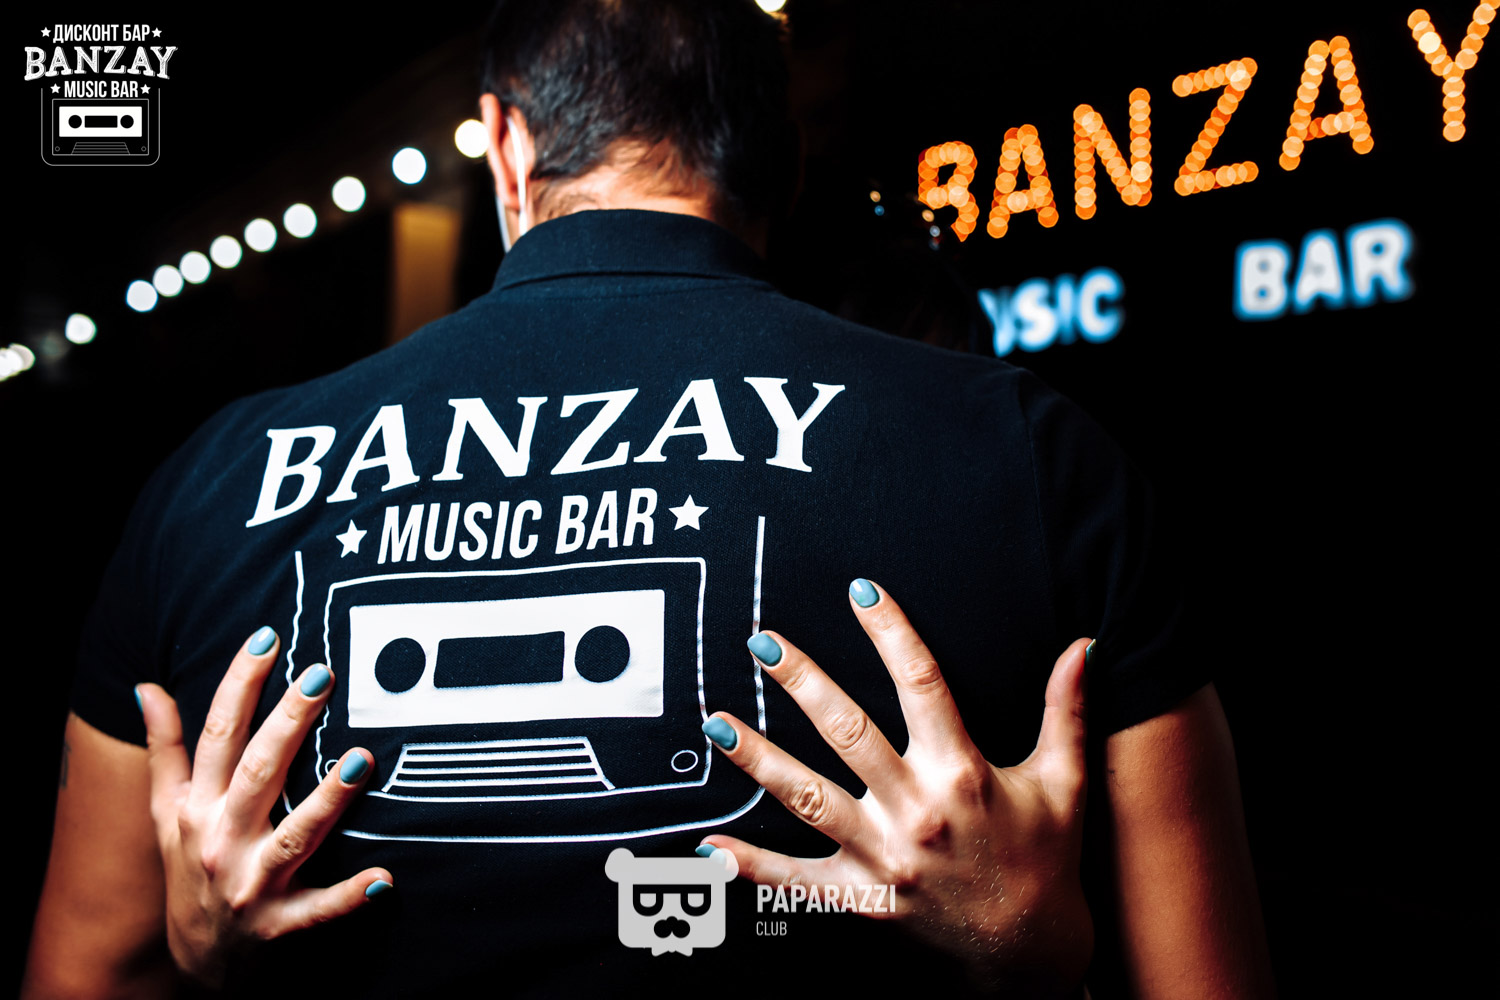 Banzay music bar